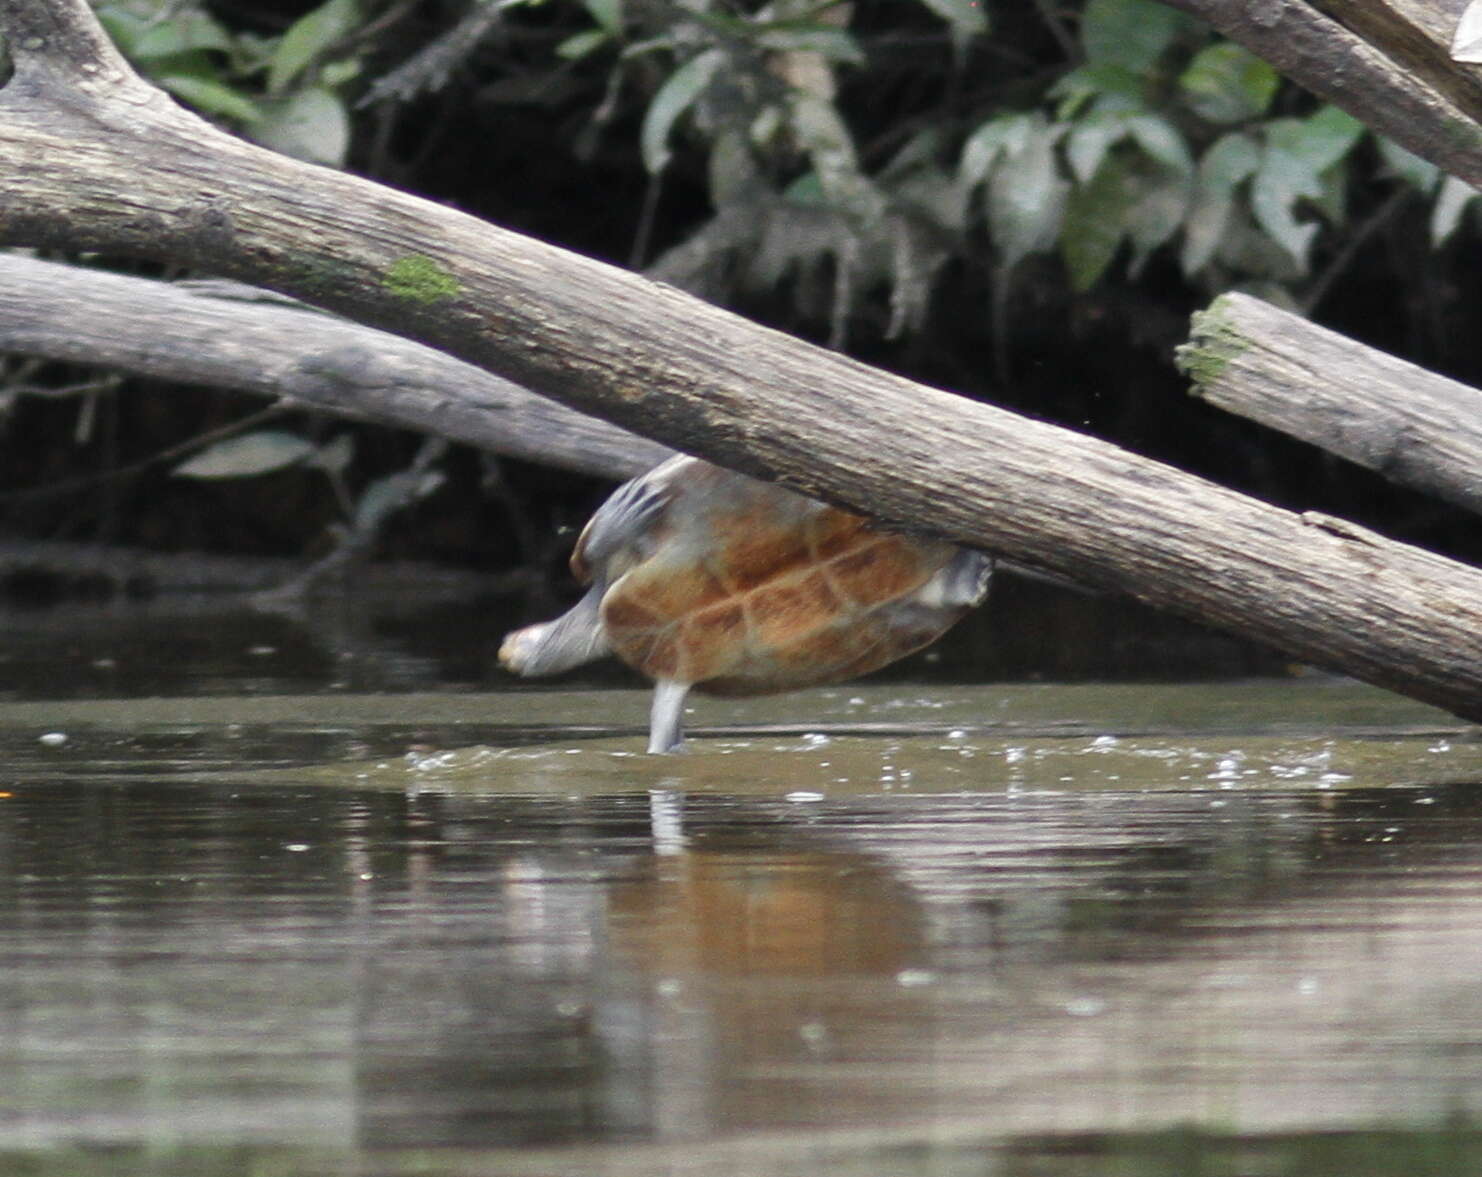 Image of Yellow-headed sideneck turtle